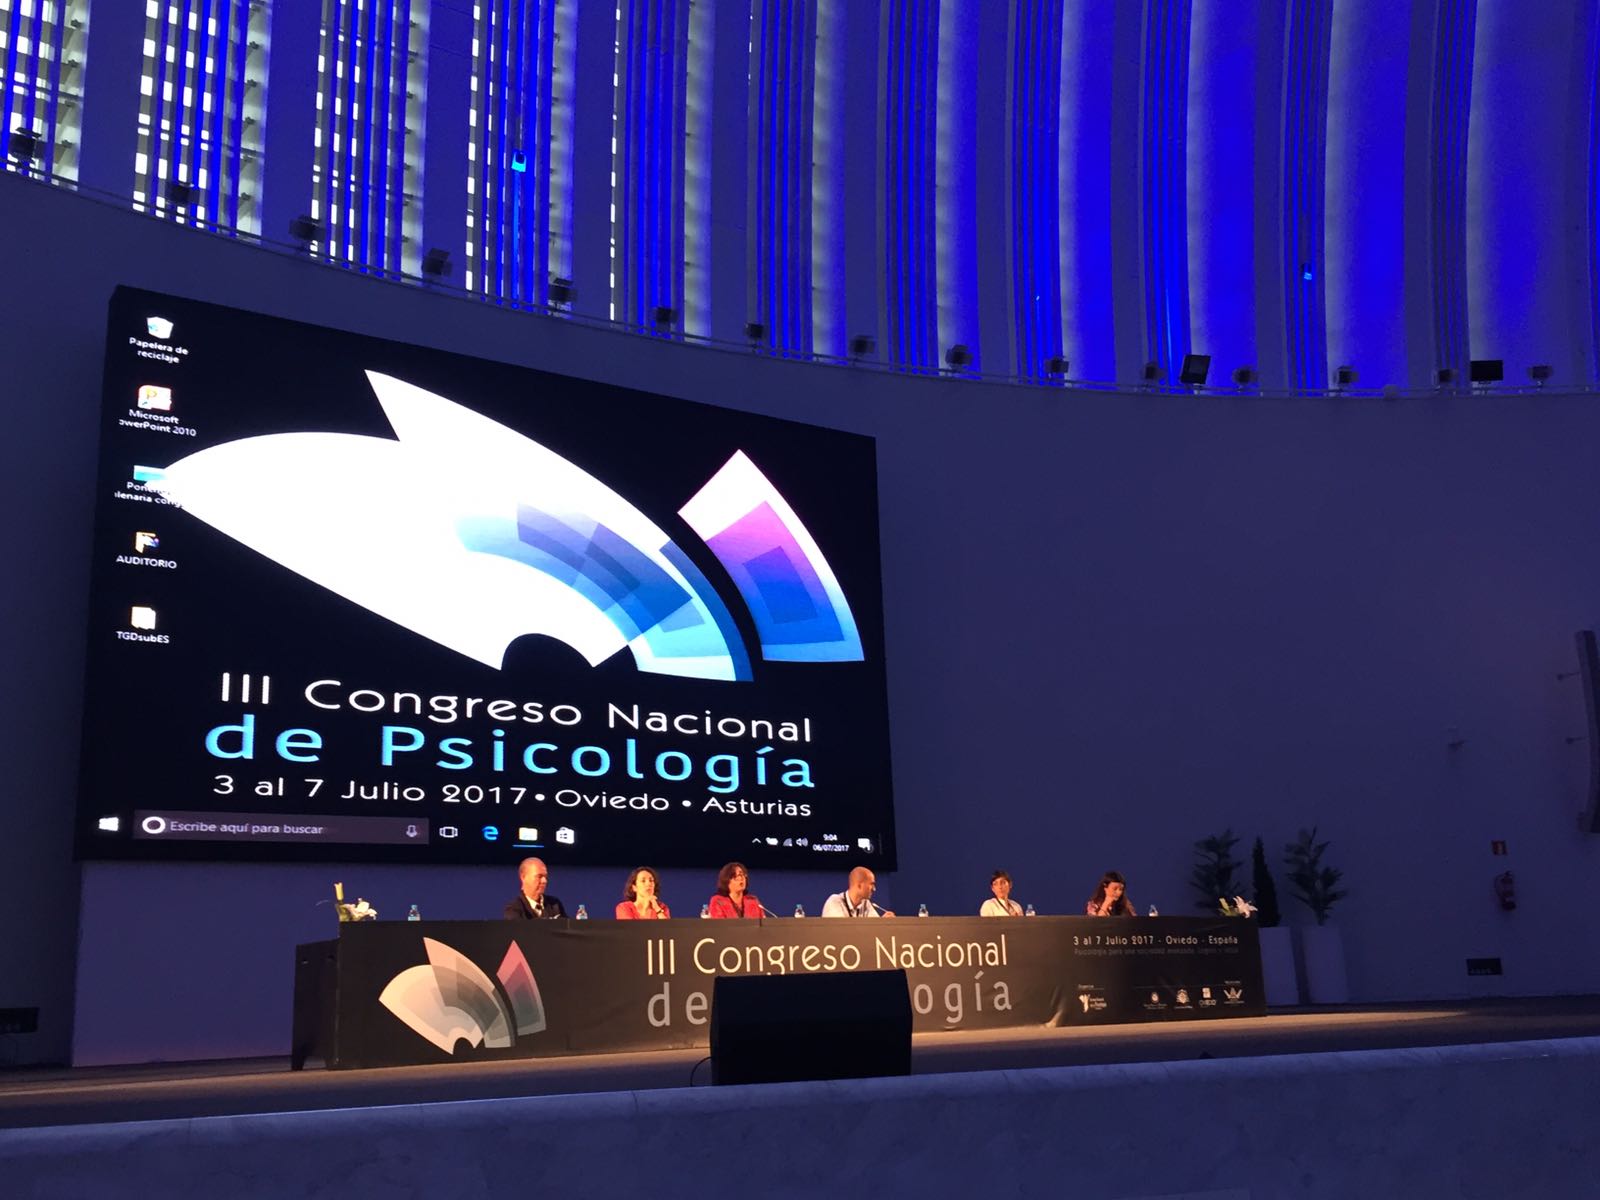 Participación en el III Congreso Nacional de Psicología de Oviedo